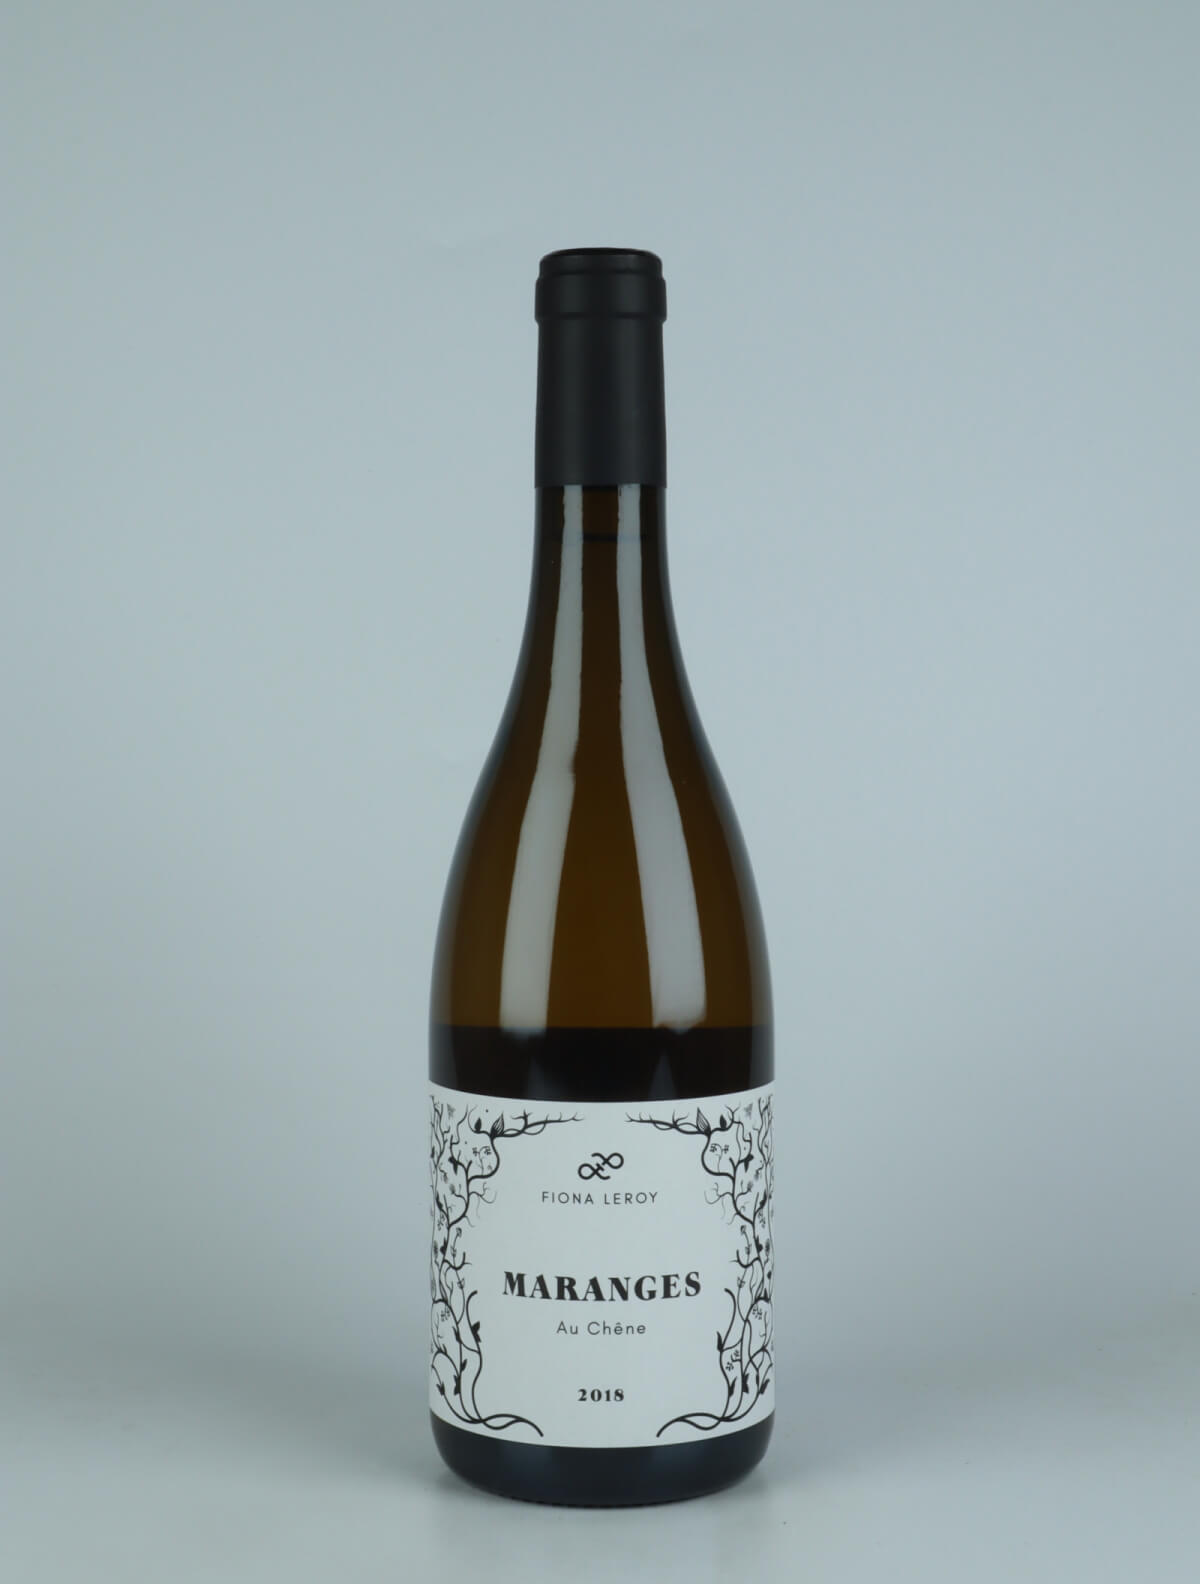 En flaske 2018 Maranges Blanc - Au Chêne Hvidvin fra Fiona Leroy, Bourgogne i Frankrig